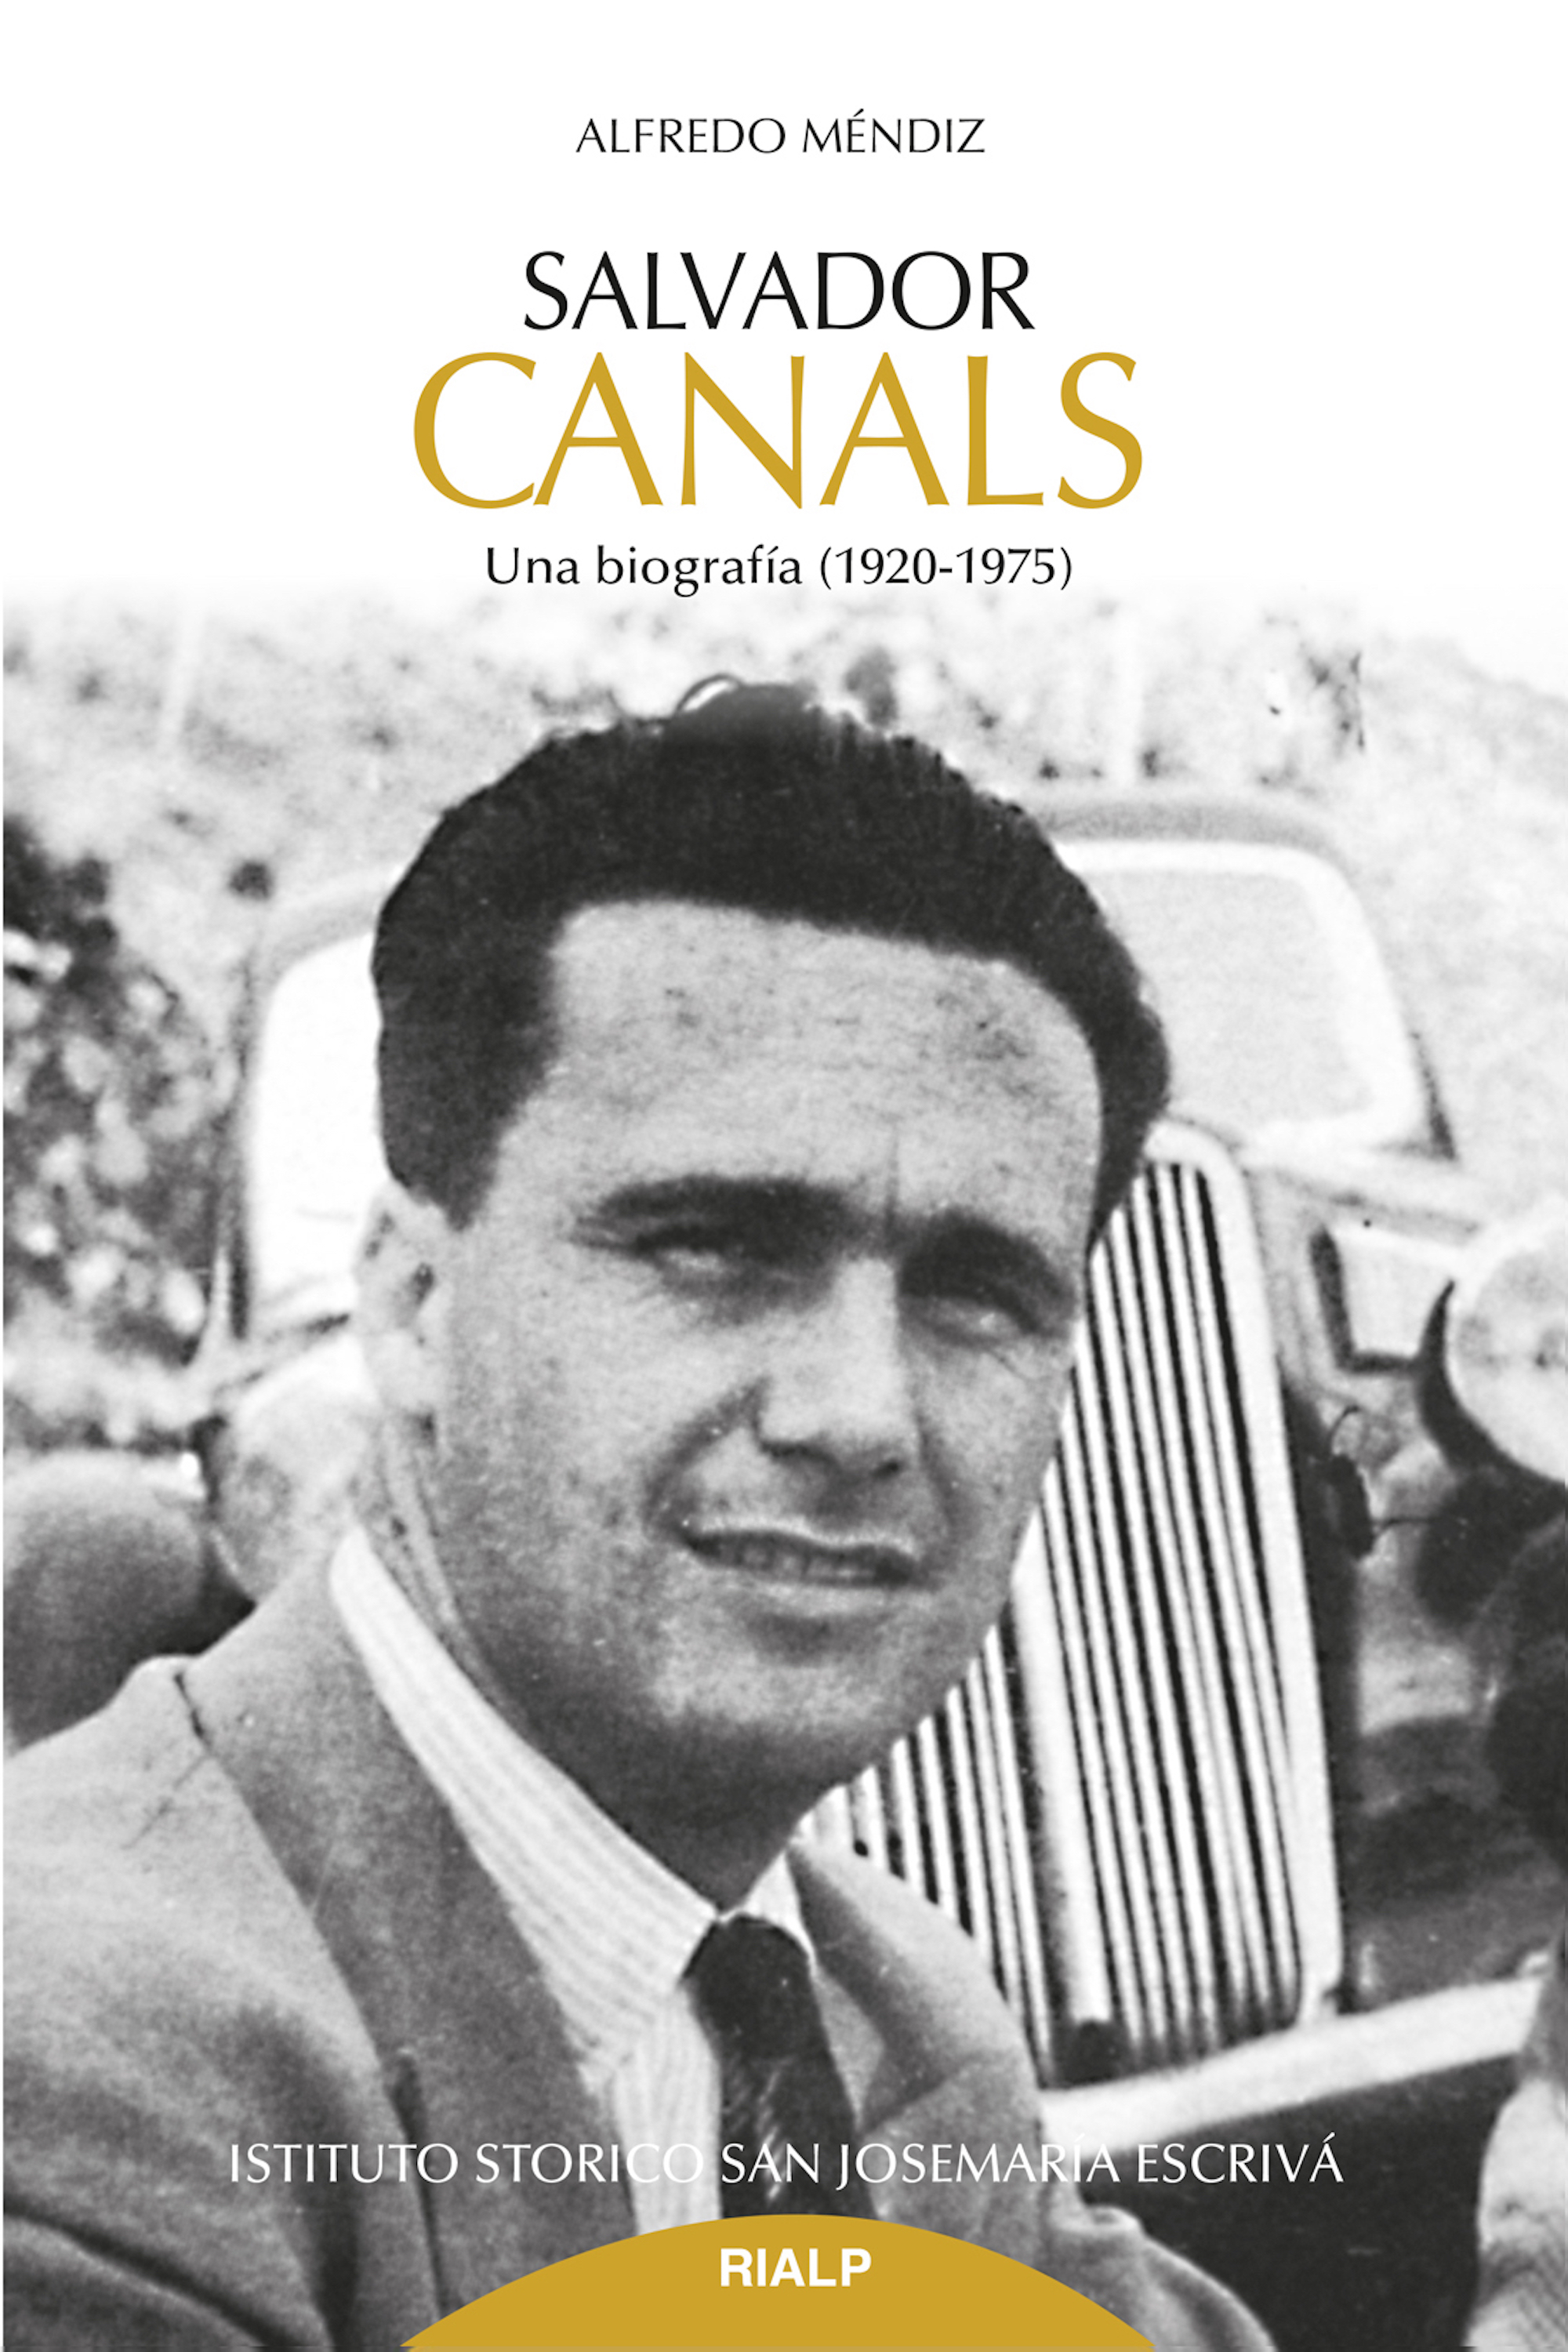 Alfredo Méndiz Noguero Salvador Canals